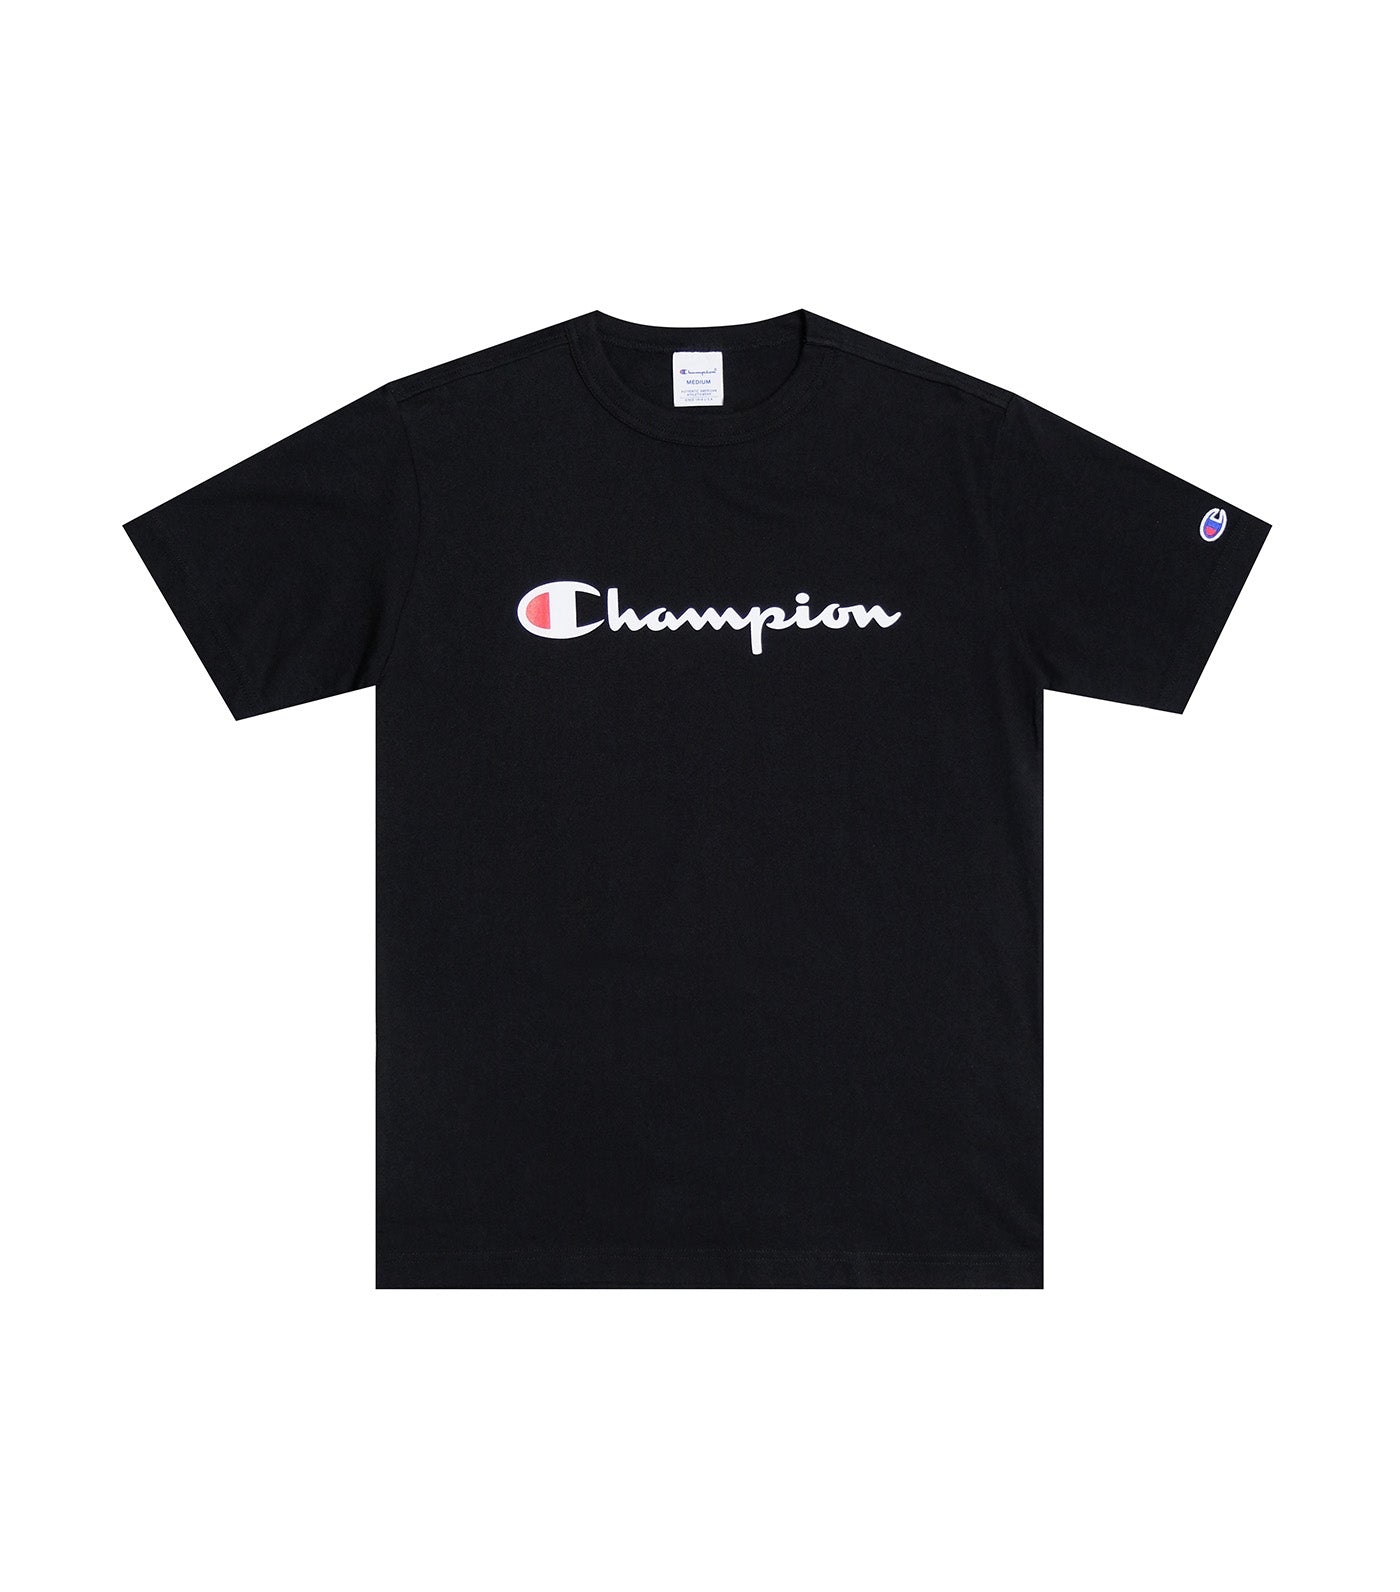 Japan Line Short Sleeve T-Shirt Black